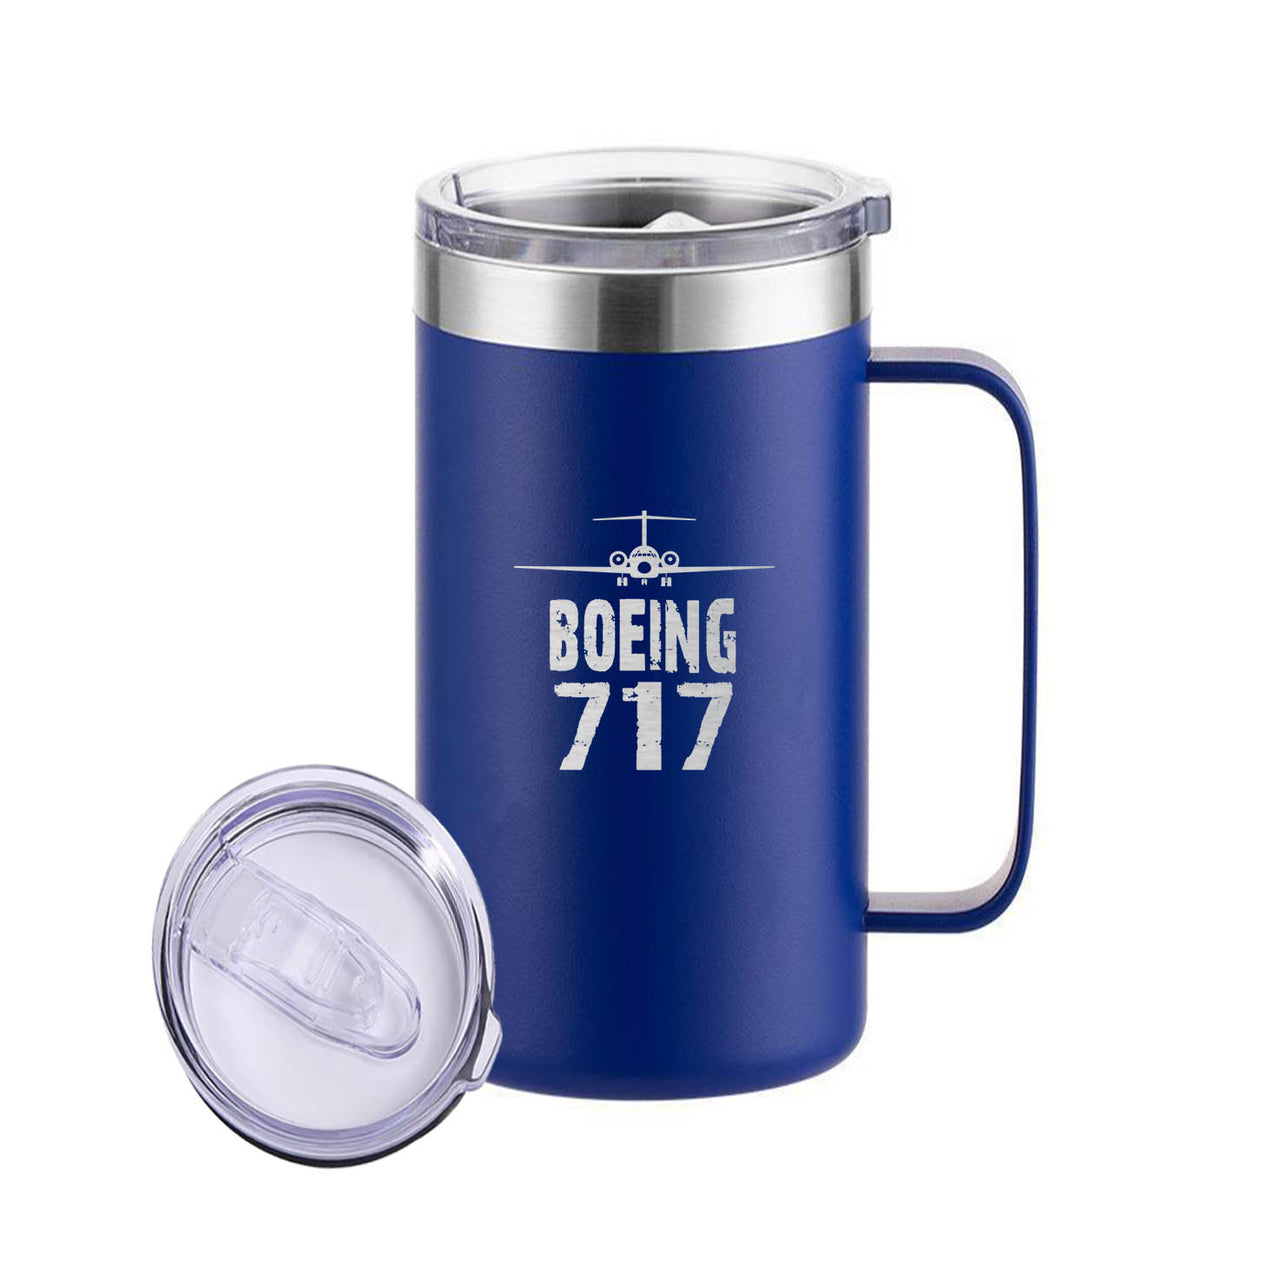 Boeing 717 & Plane Designed Stainless Steel Beer Mugs